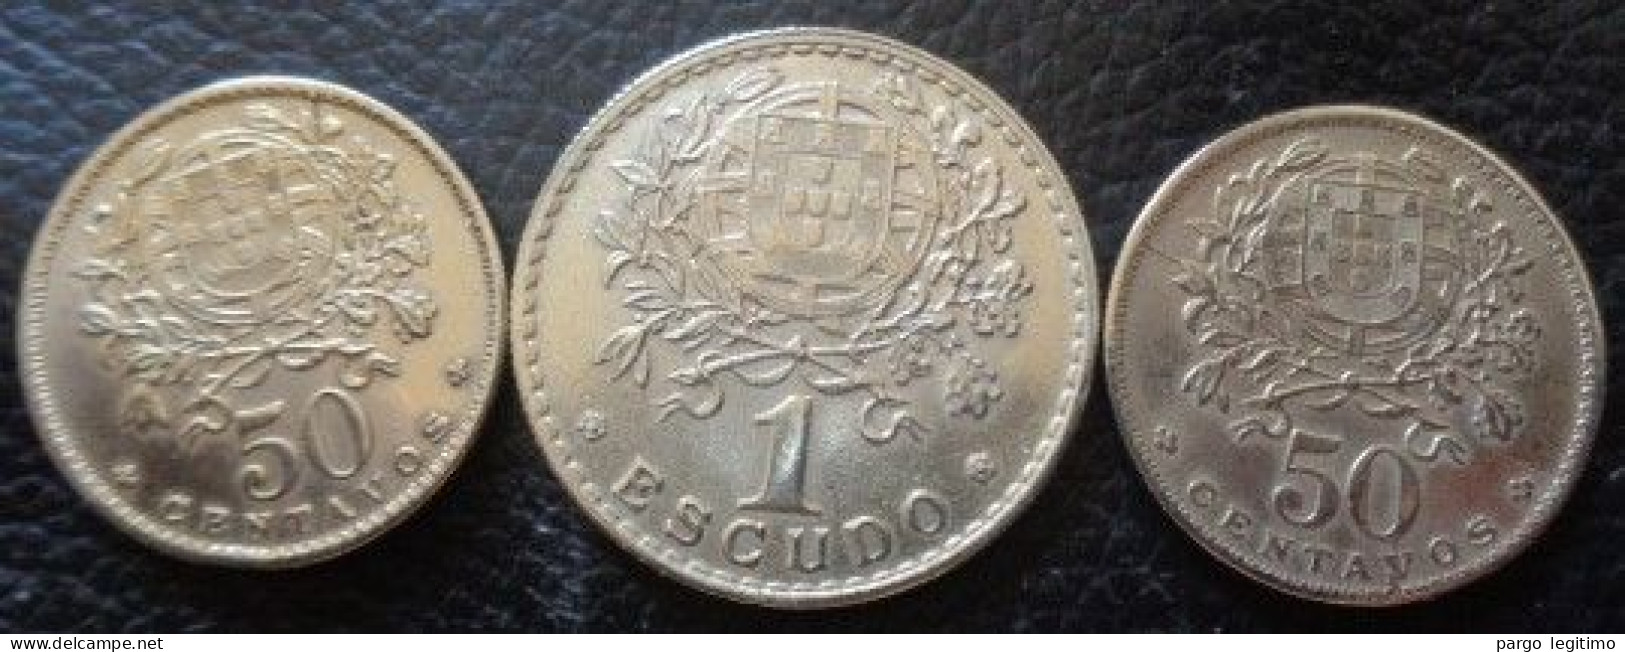 PORTUGAL 50 CENTAVOS 1927, 1929 & 1 ESCUDO 1944 FDC - Portugal